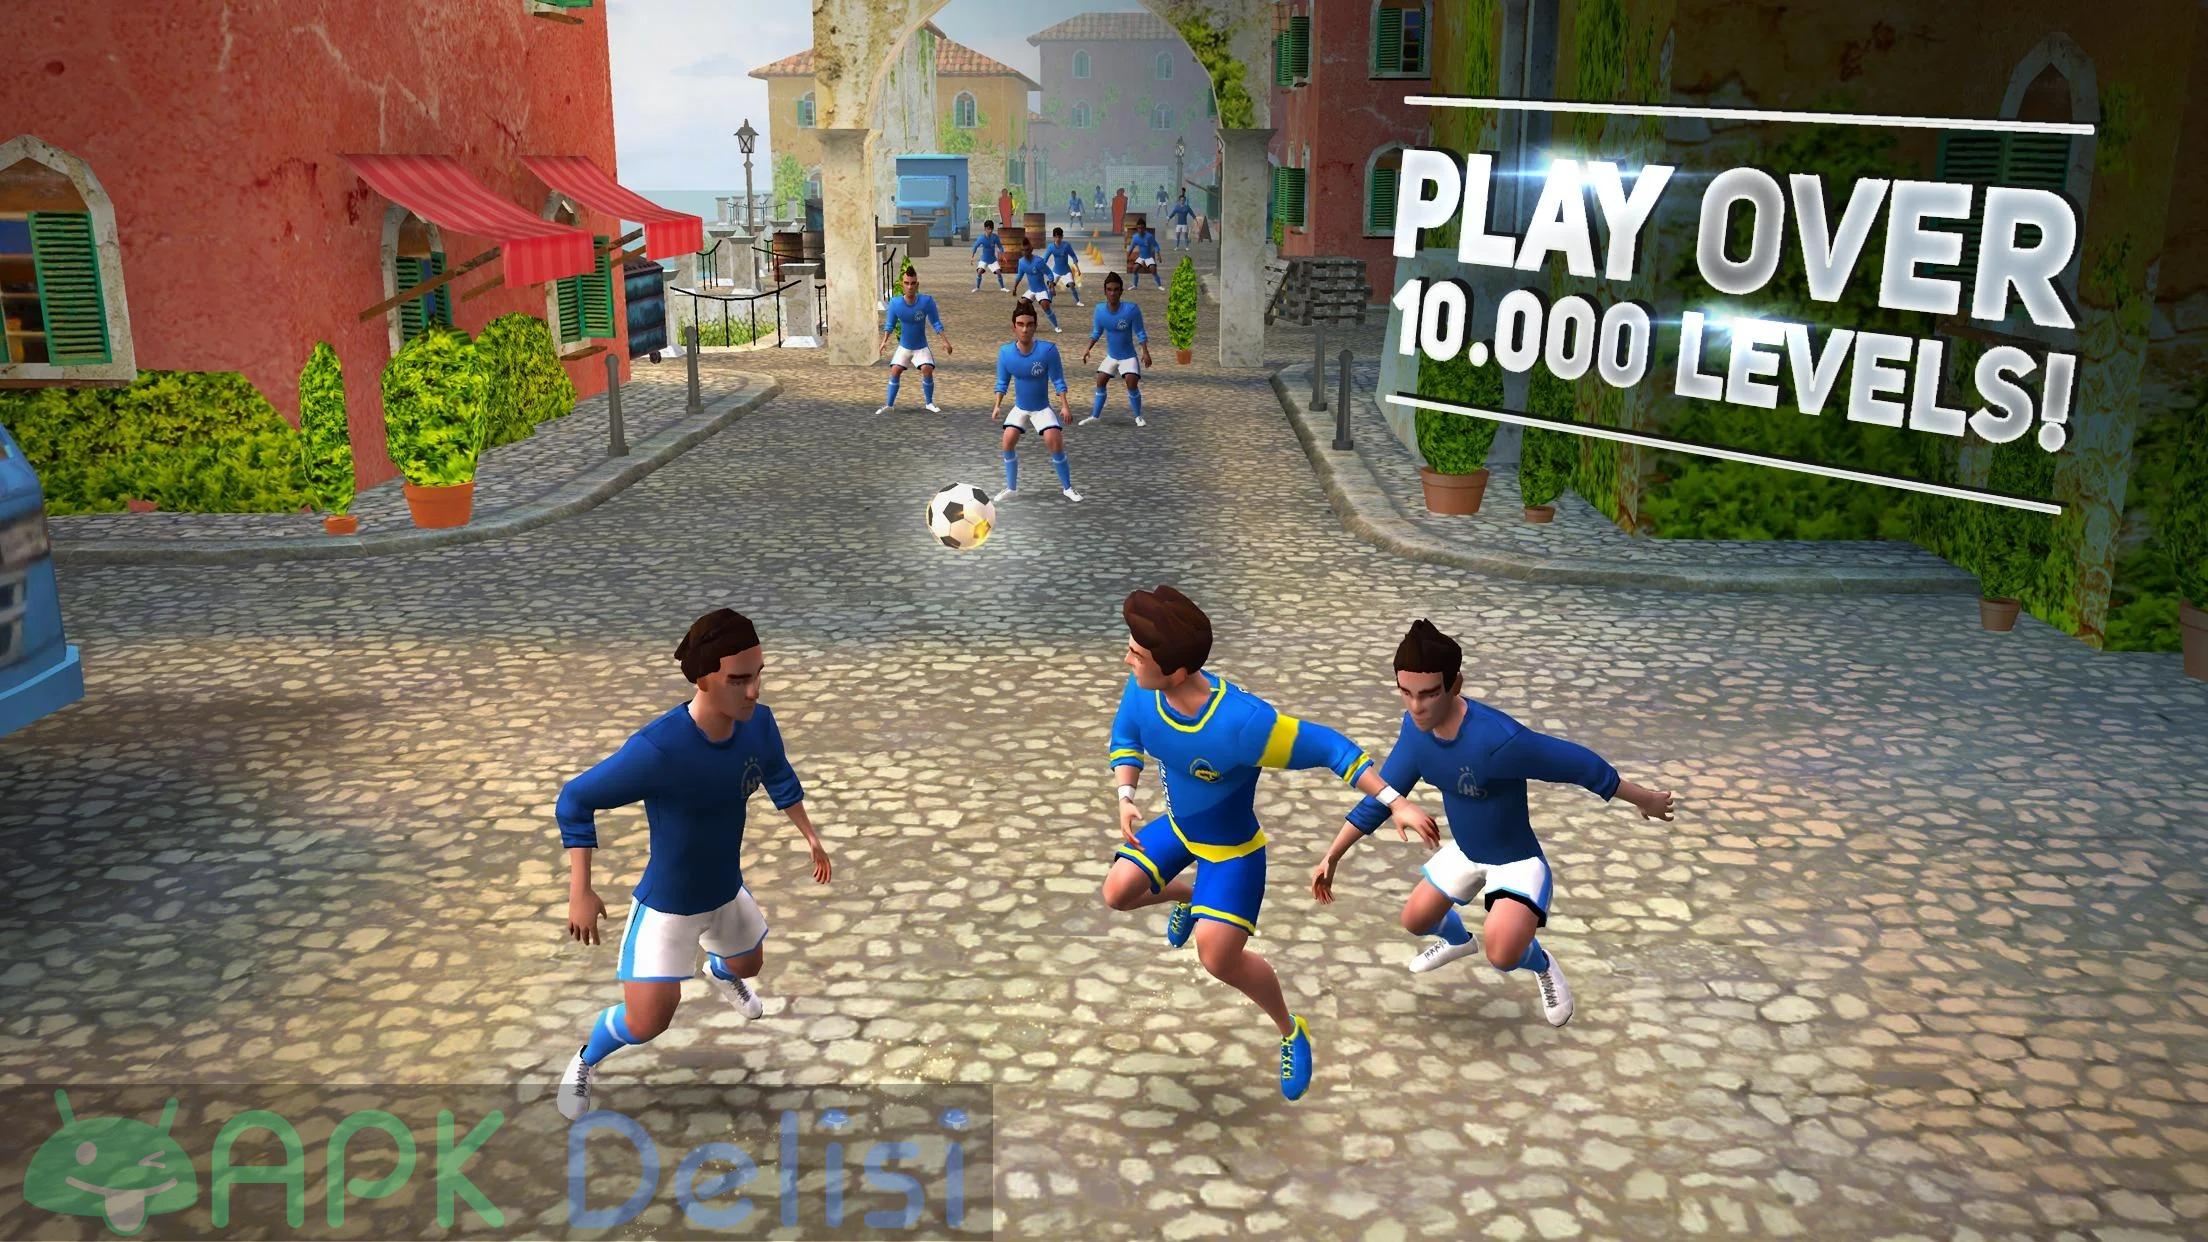 SkillTwins Soccer Game v1.8.5 MOD APK — TÜM KİLİTLER AÇIK 2